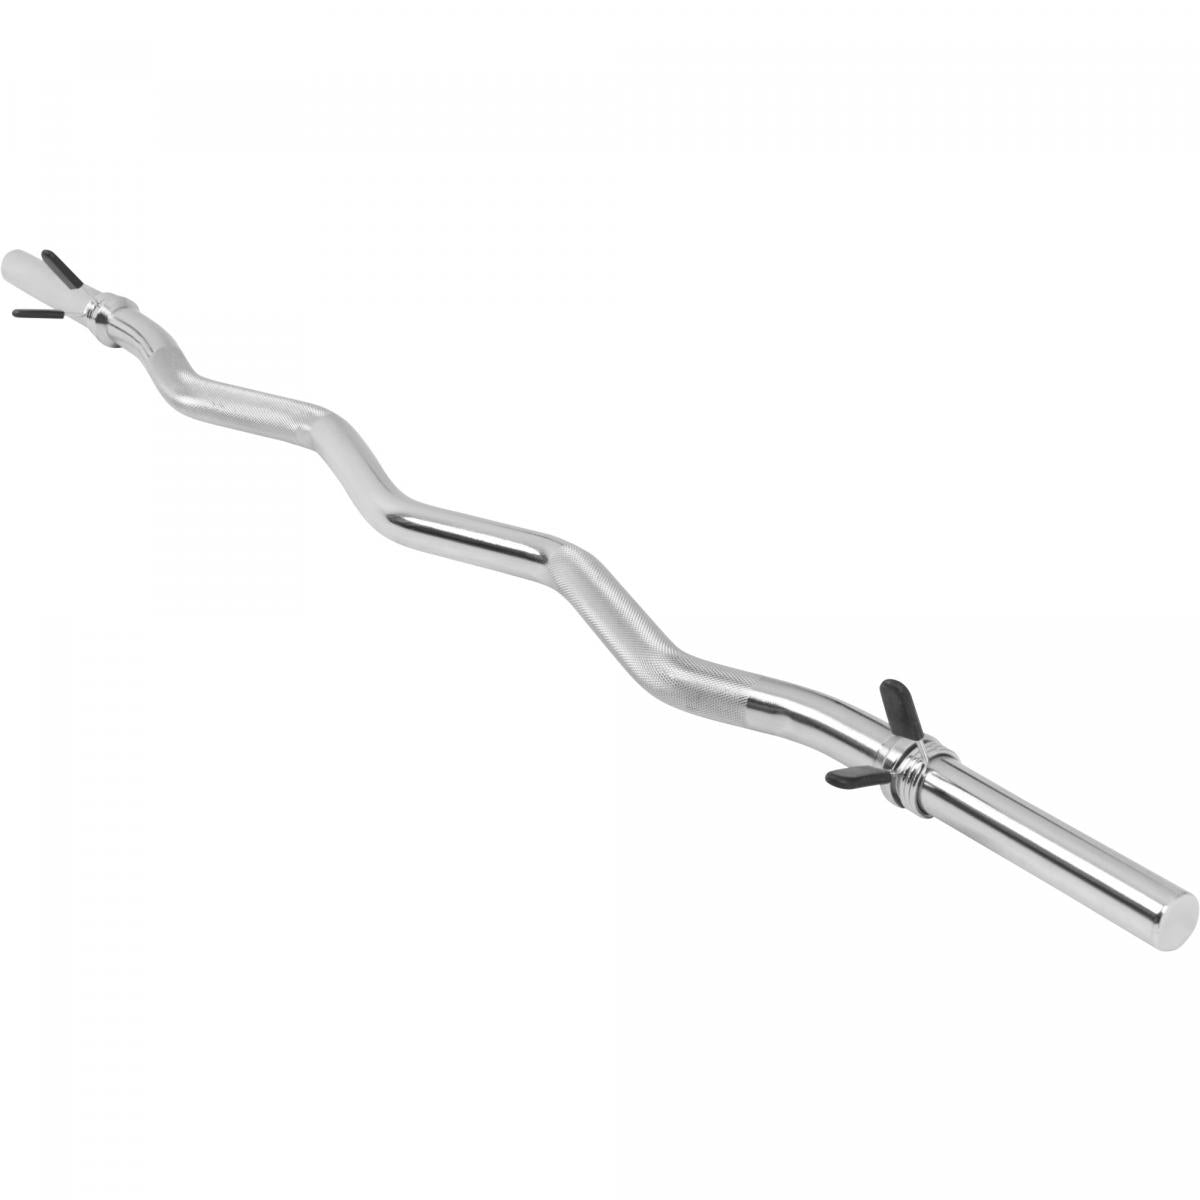 VirtuFit Curl bar - EZ Halter bar - 120 cm - Spring clip - 30 mm